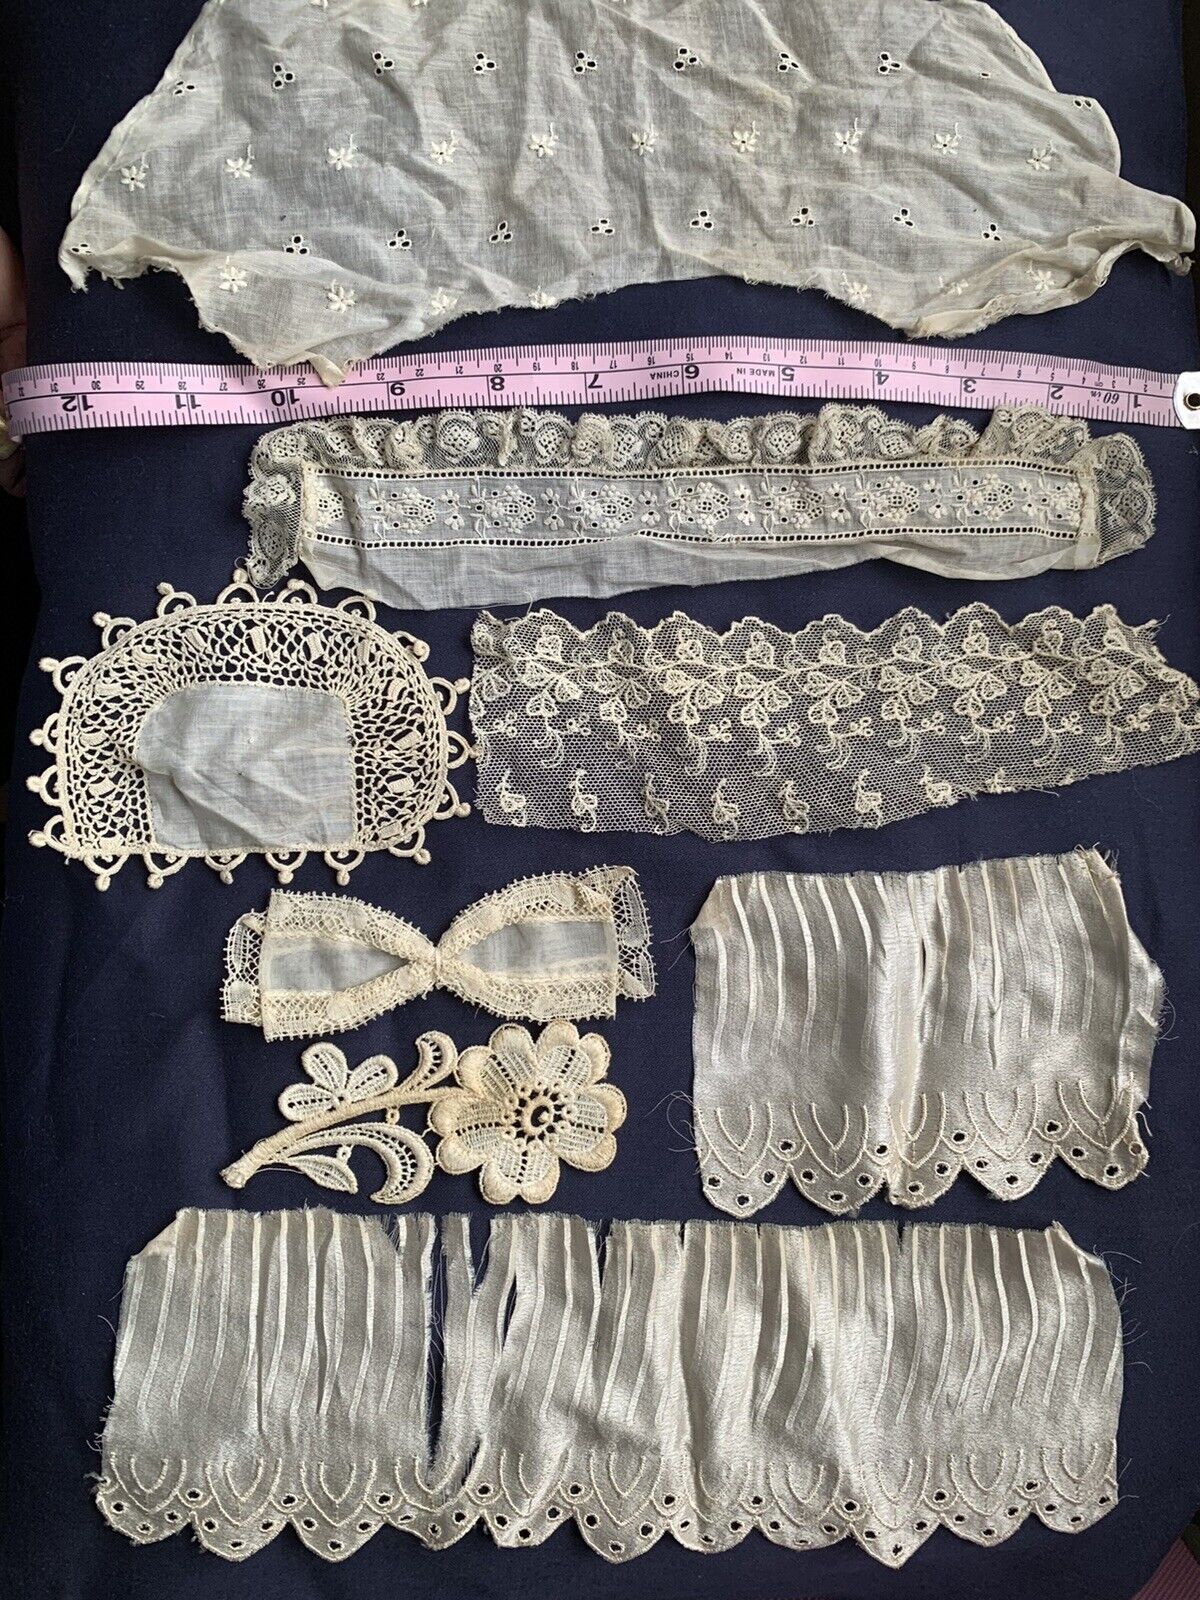 Antique lace textiles trim mixed lot dress doll elements 19c Vintage VICTORIAN